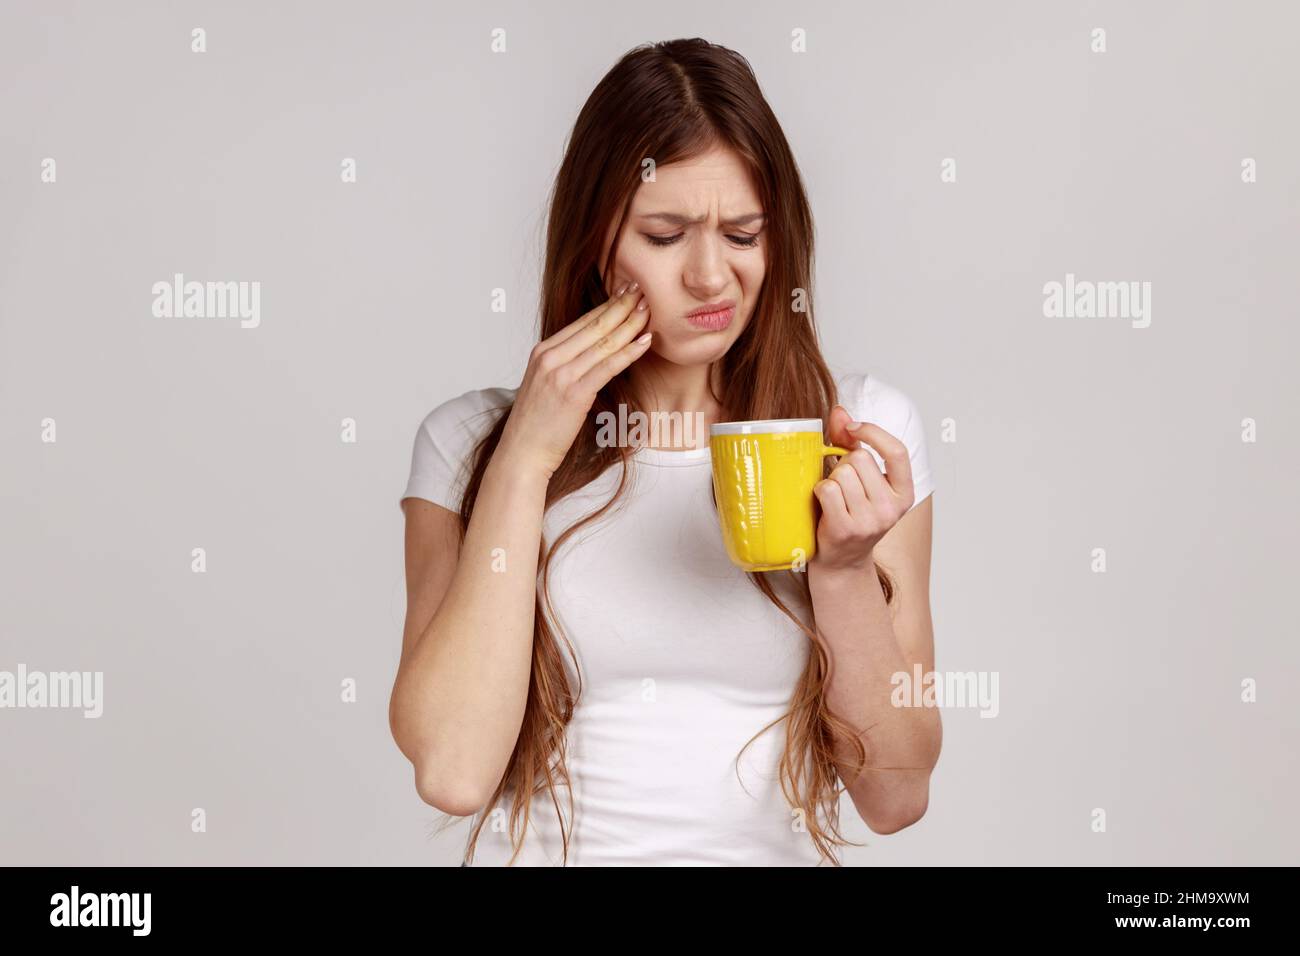 Mujer enferma malsana tocando el mentón sufriendo dolor de dientes, tiene dientes sensibles, siente dolor después de beber agua fría, usando una camiseta blanca. Estudio en interior grabado aislado sobre fondo gris. Foto de stock